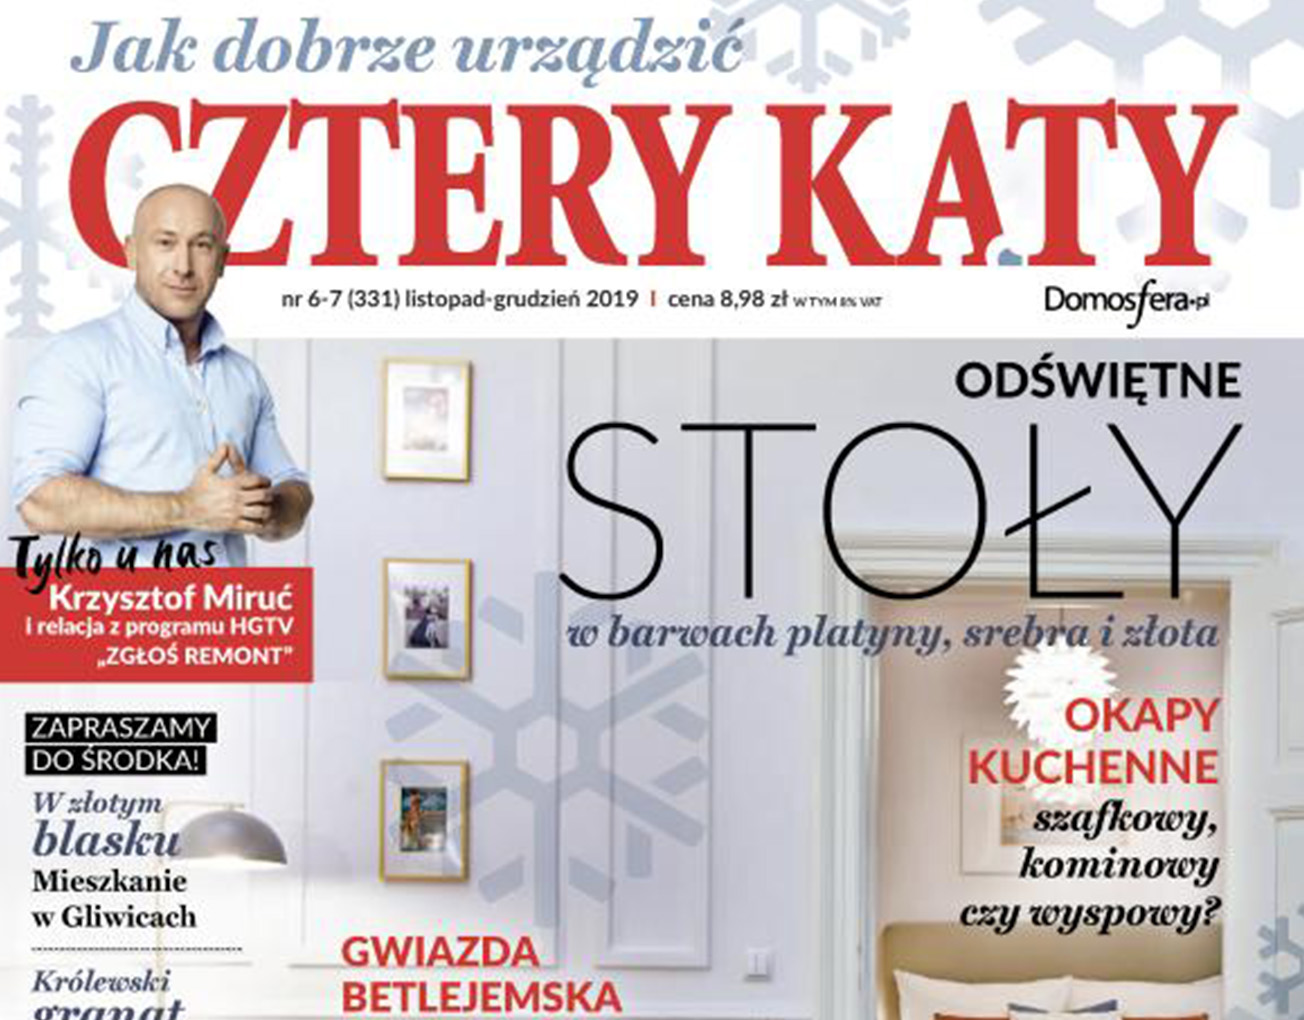 Produkty Red Lychee w magazynie Cztery Kąty - www.red-lychee.pl